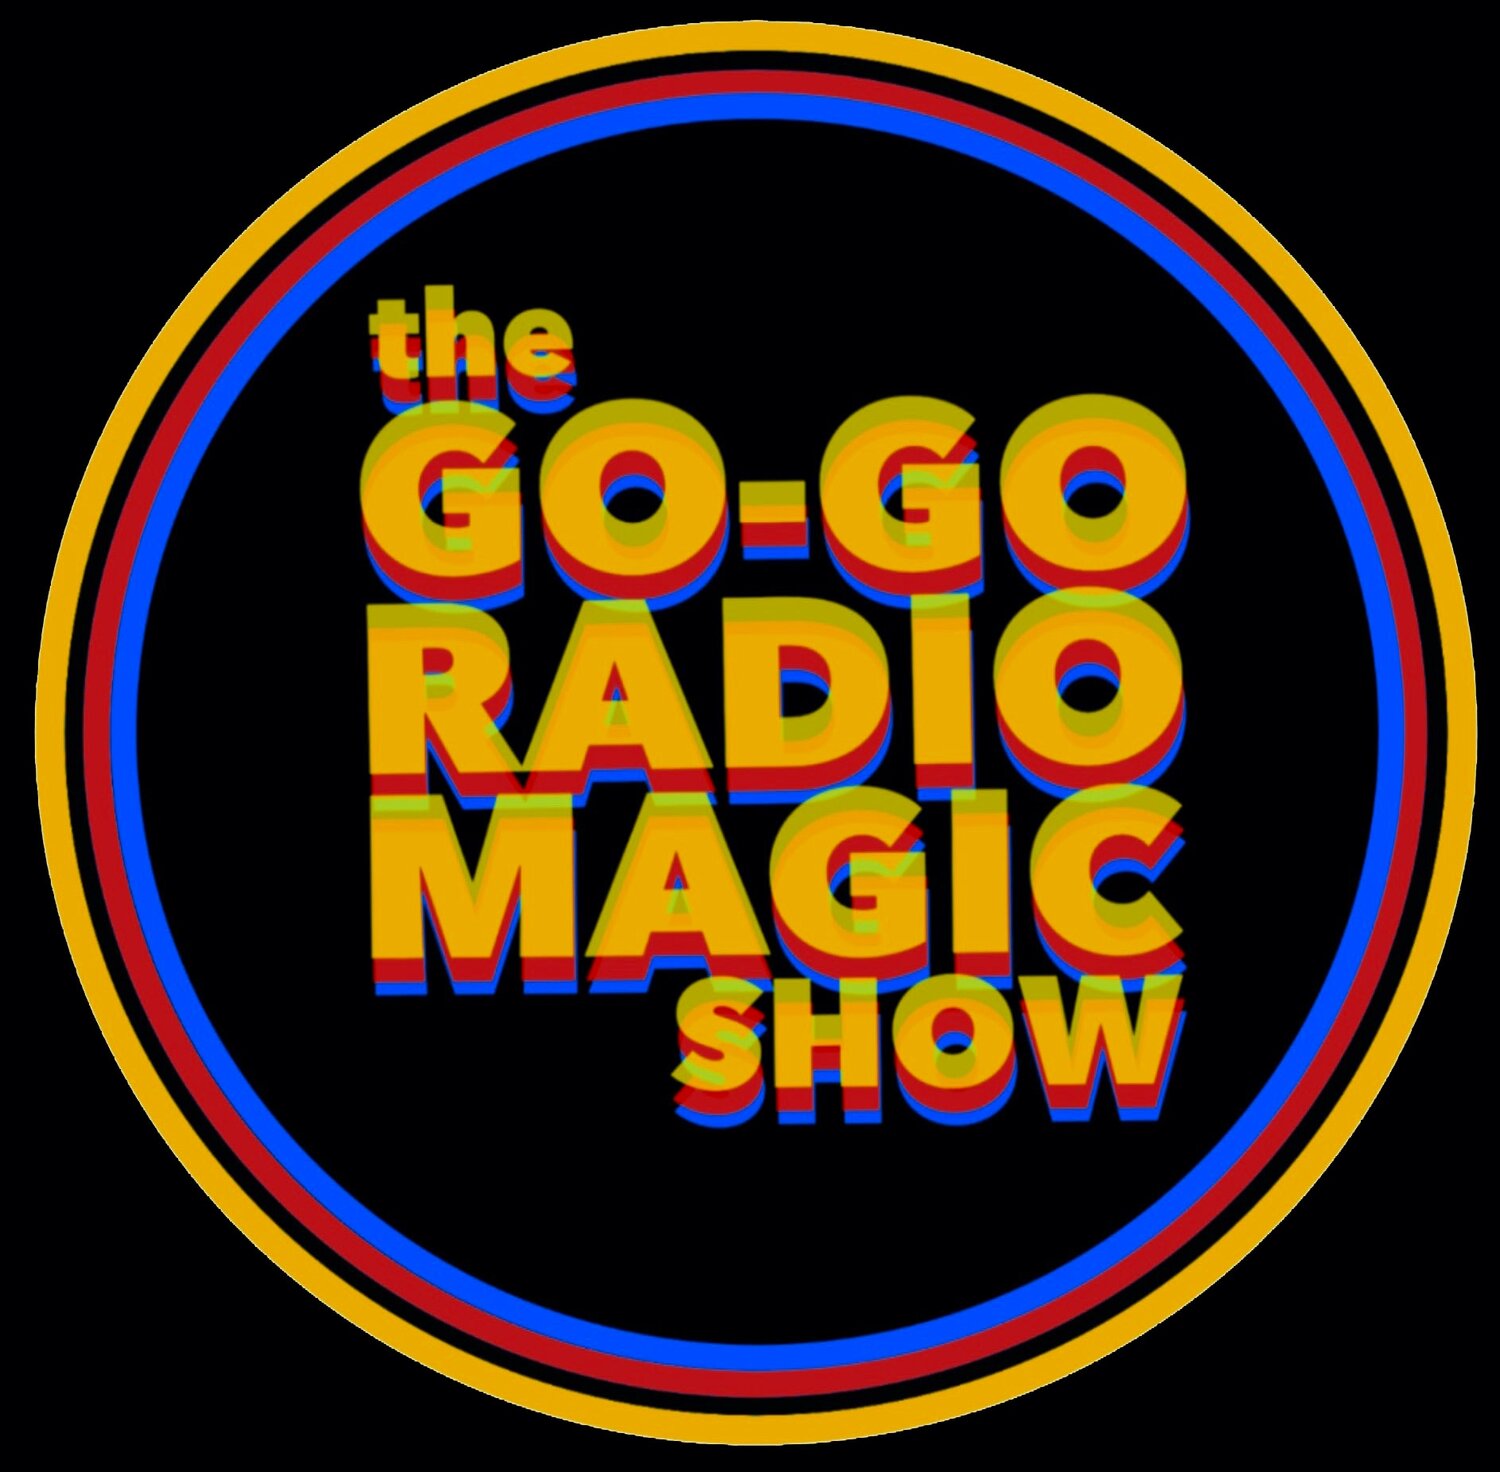 The GO-GO RADIO MAGIC SHOW